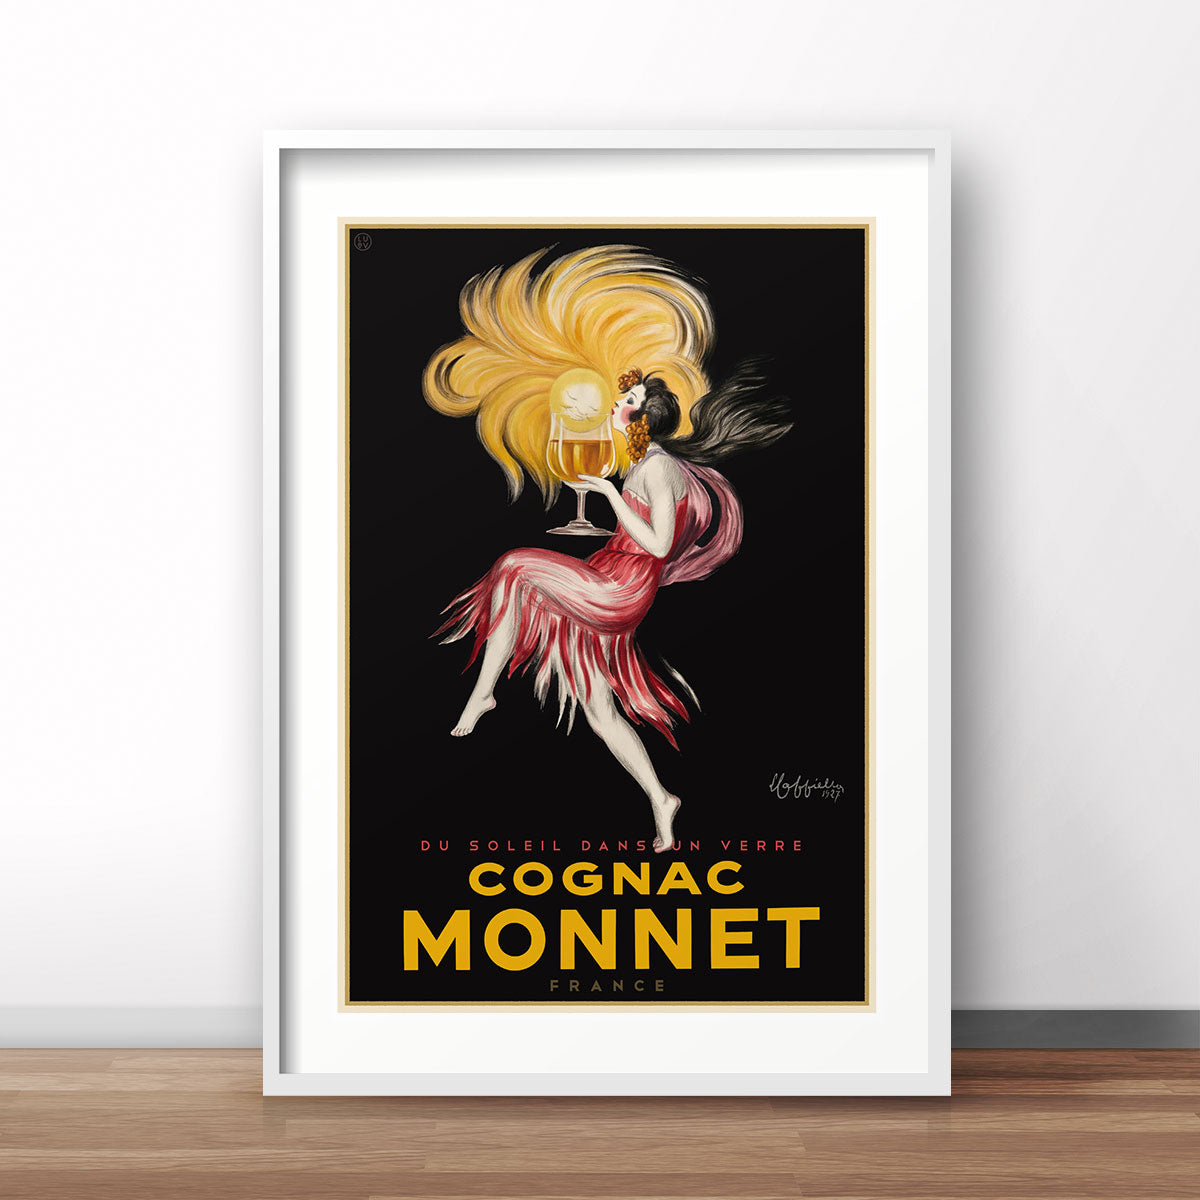 Monnet Cognac France vintage retro poster - Places We Luv